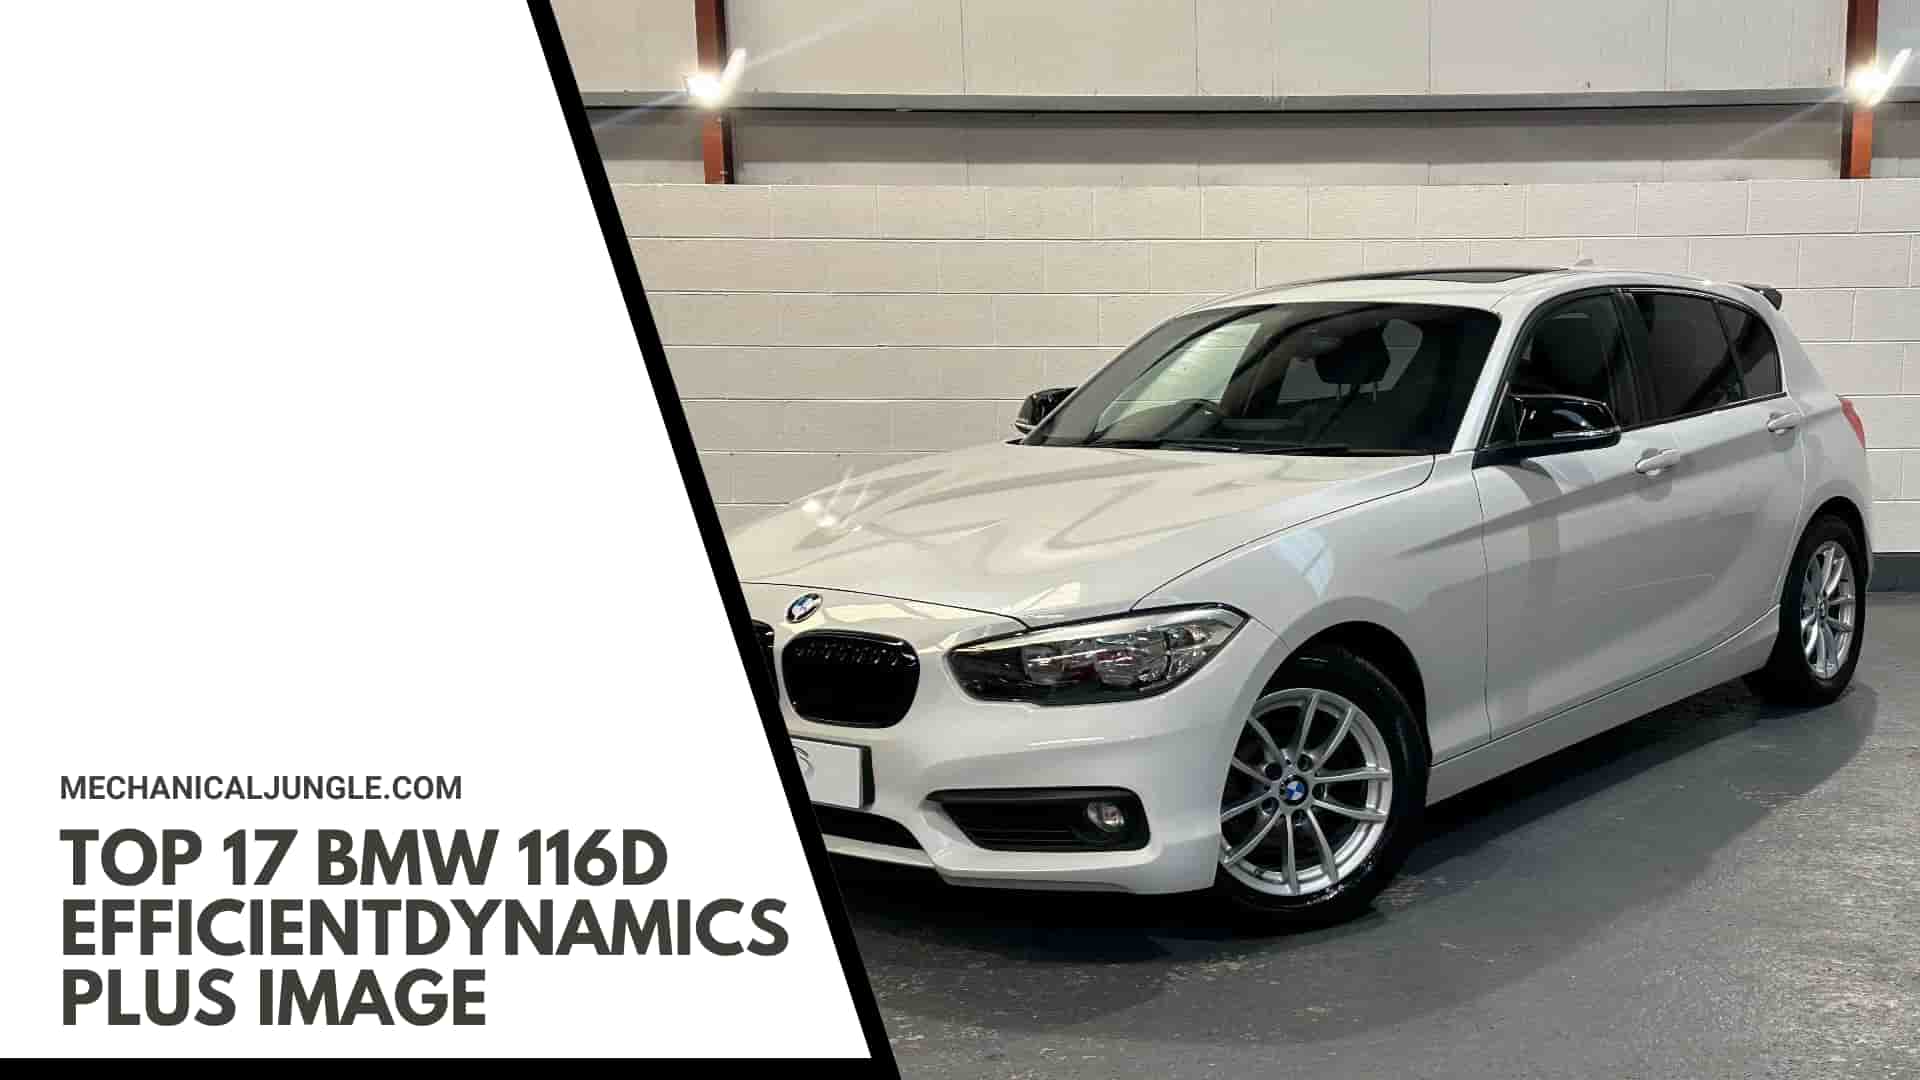 Top 17 BMW 116d EfficientDynamics Plus Image